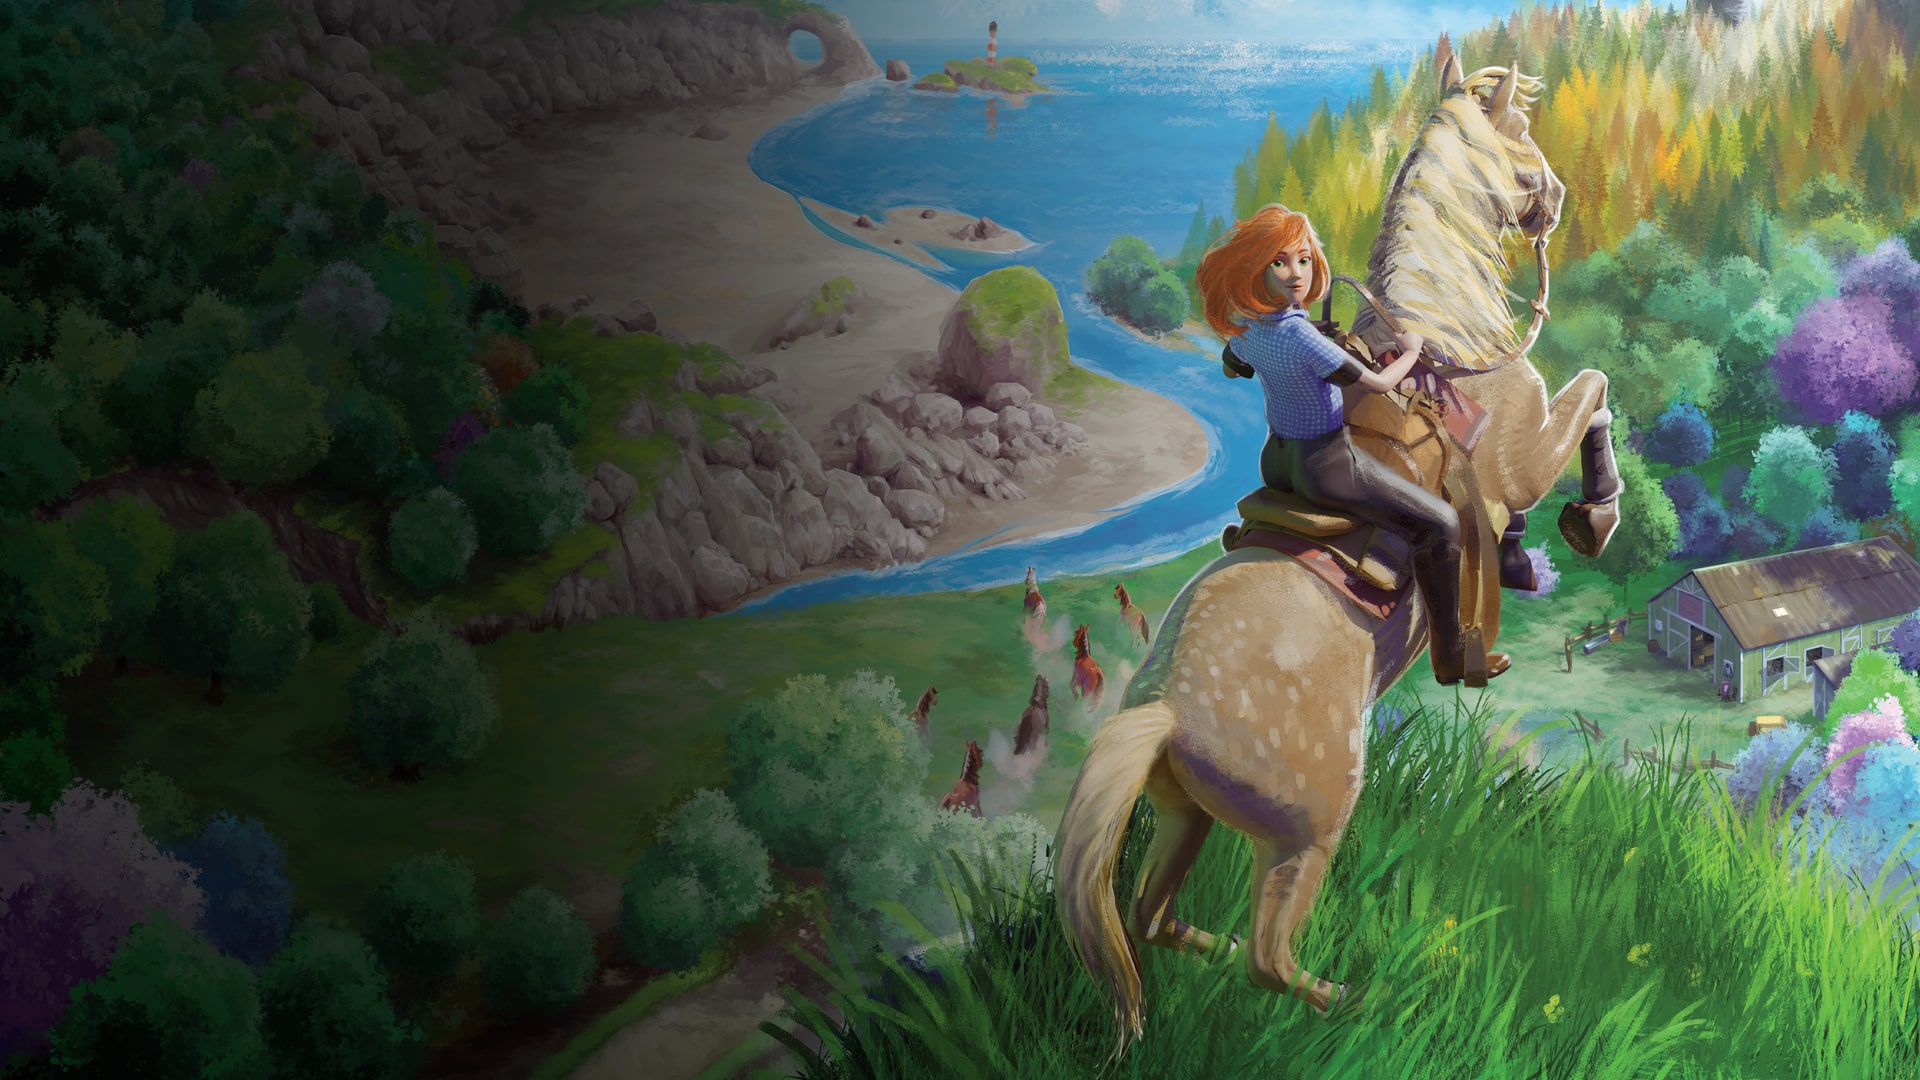 Horse Tales Preview Gamescom